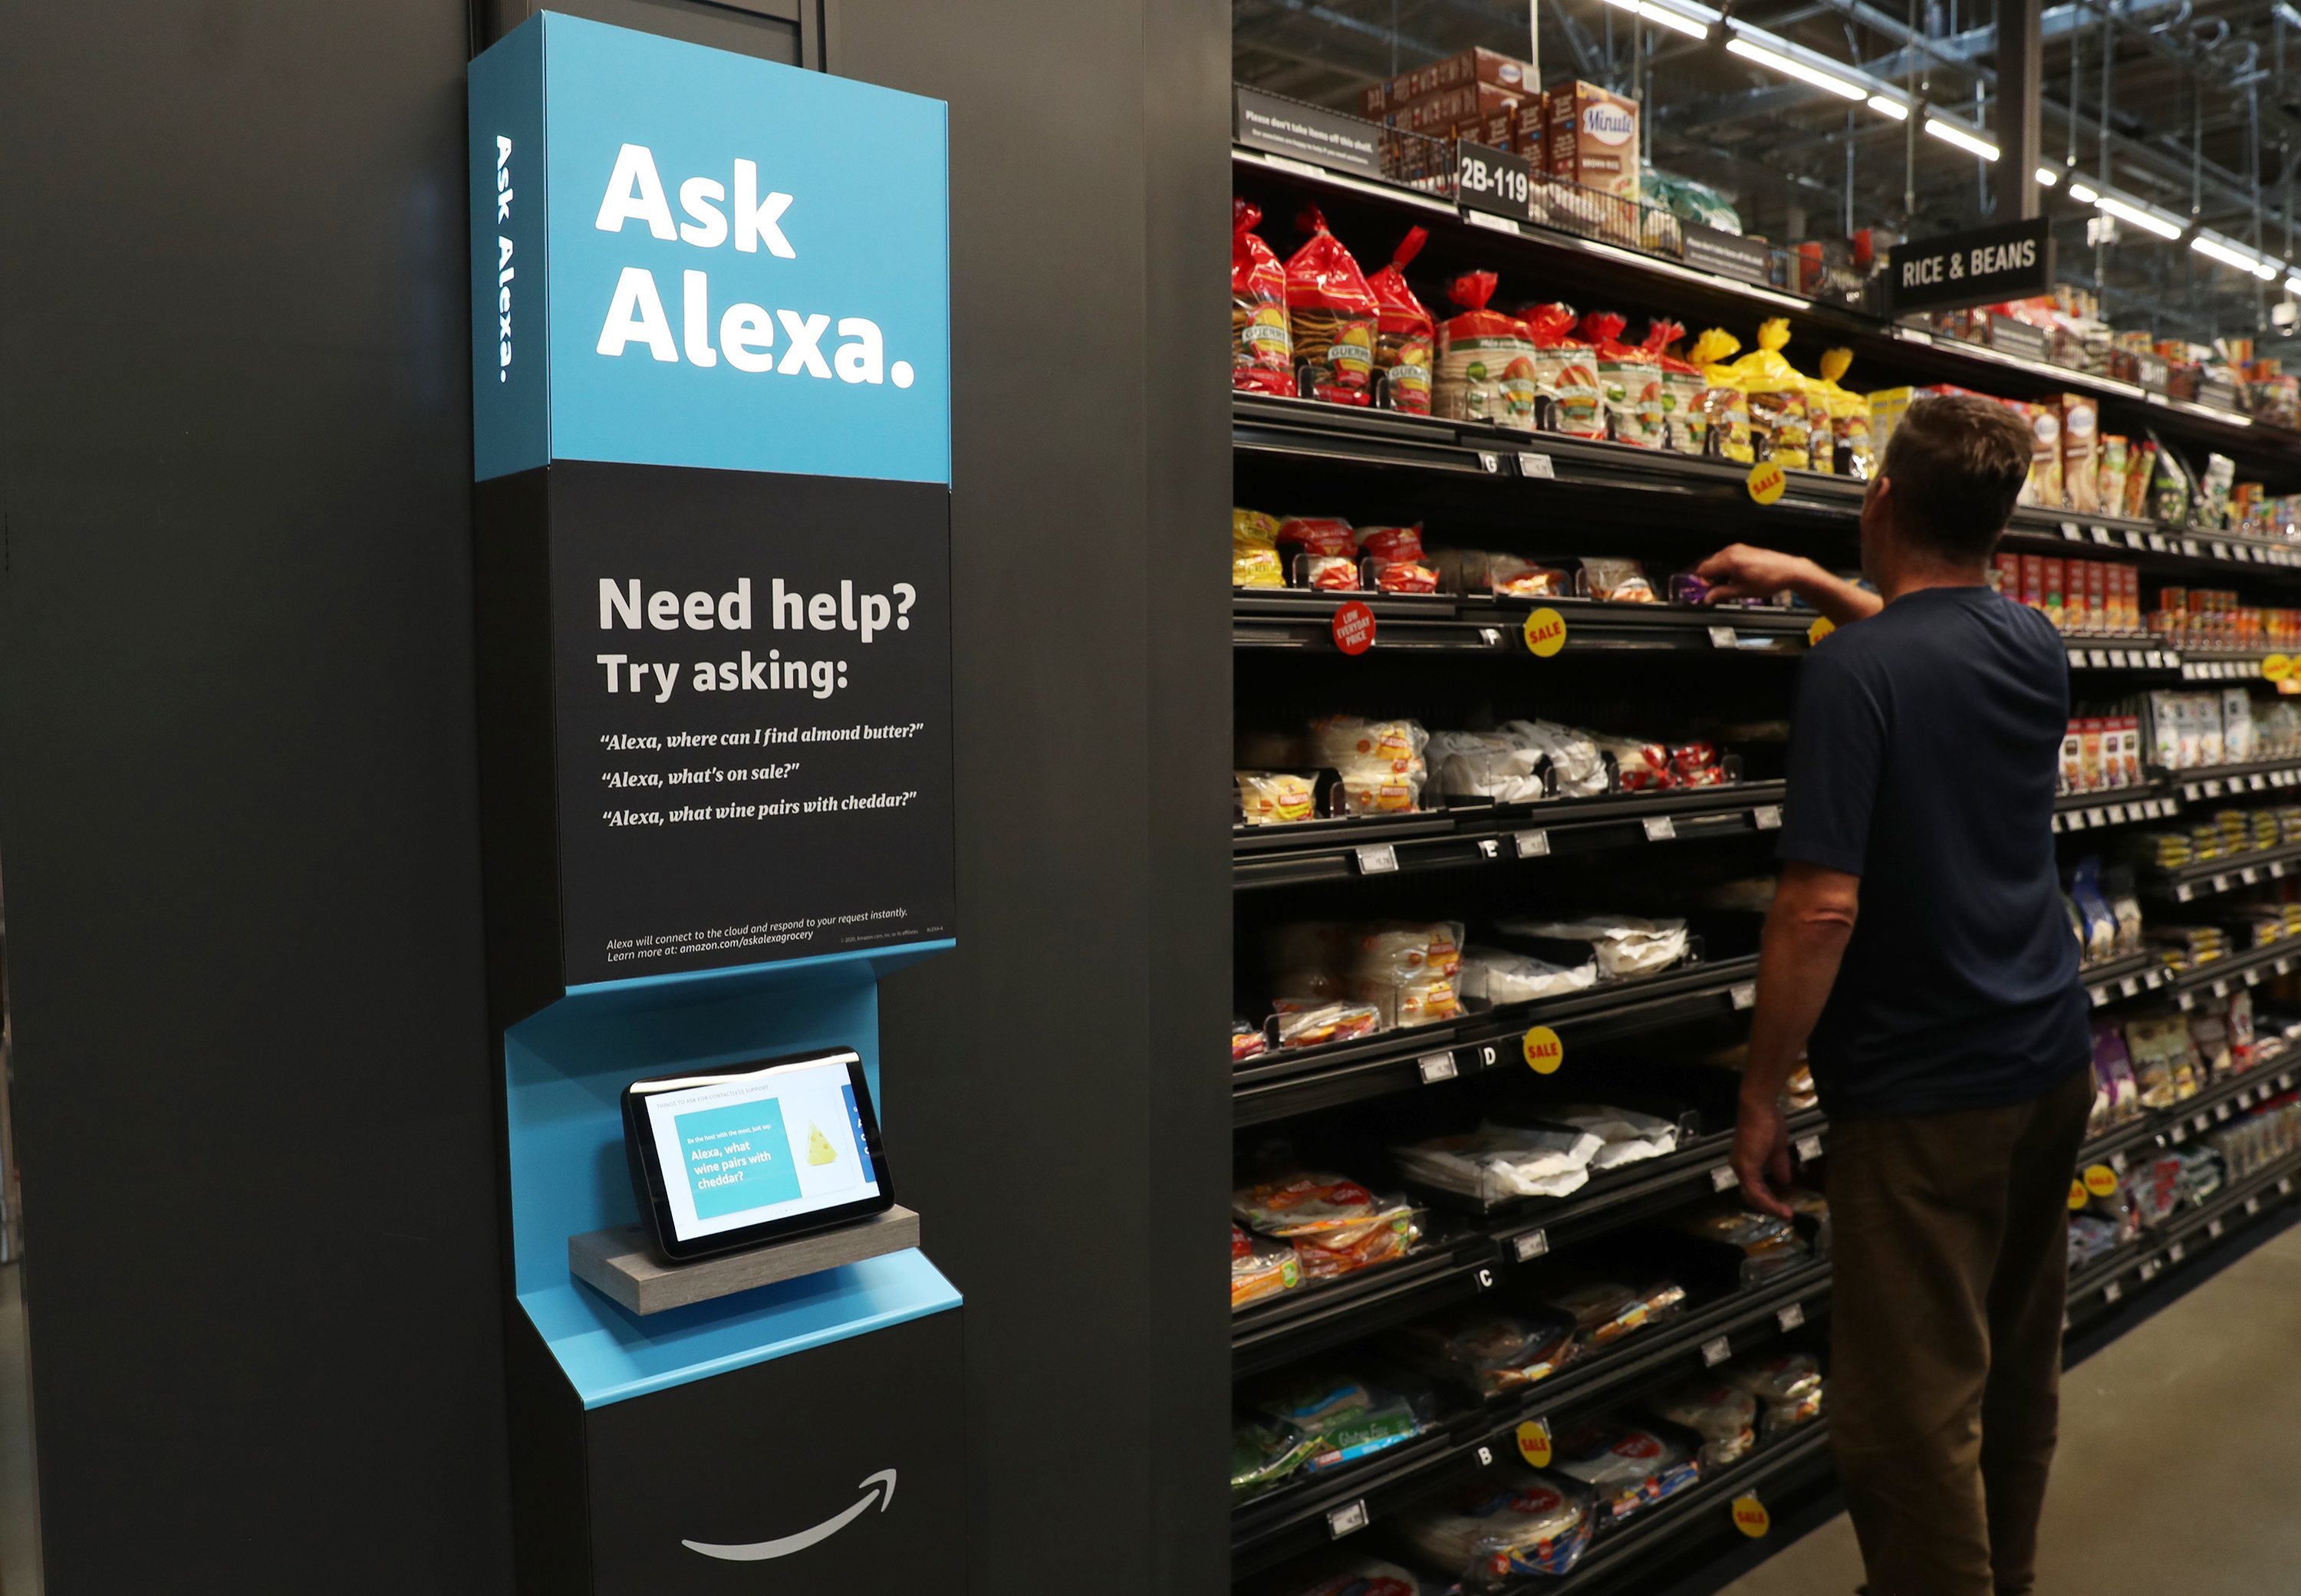 Amazon's Alexa to start seeking doctor help